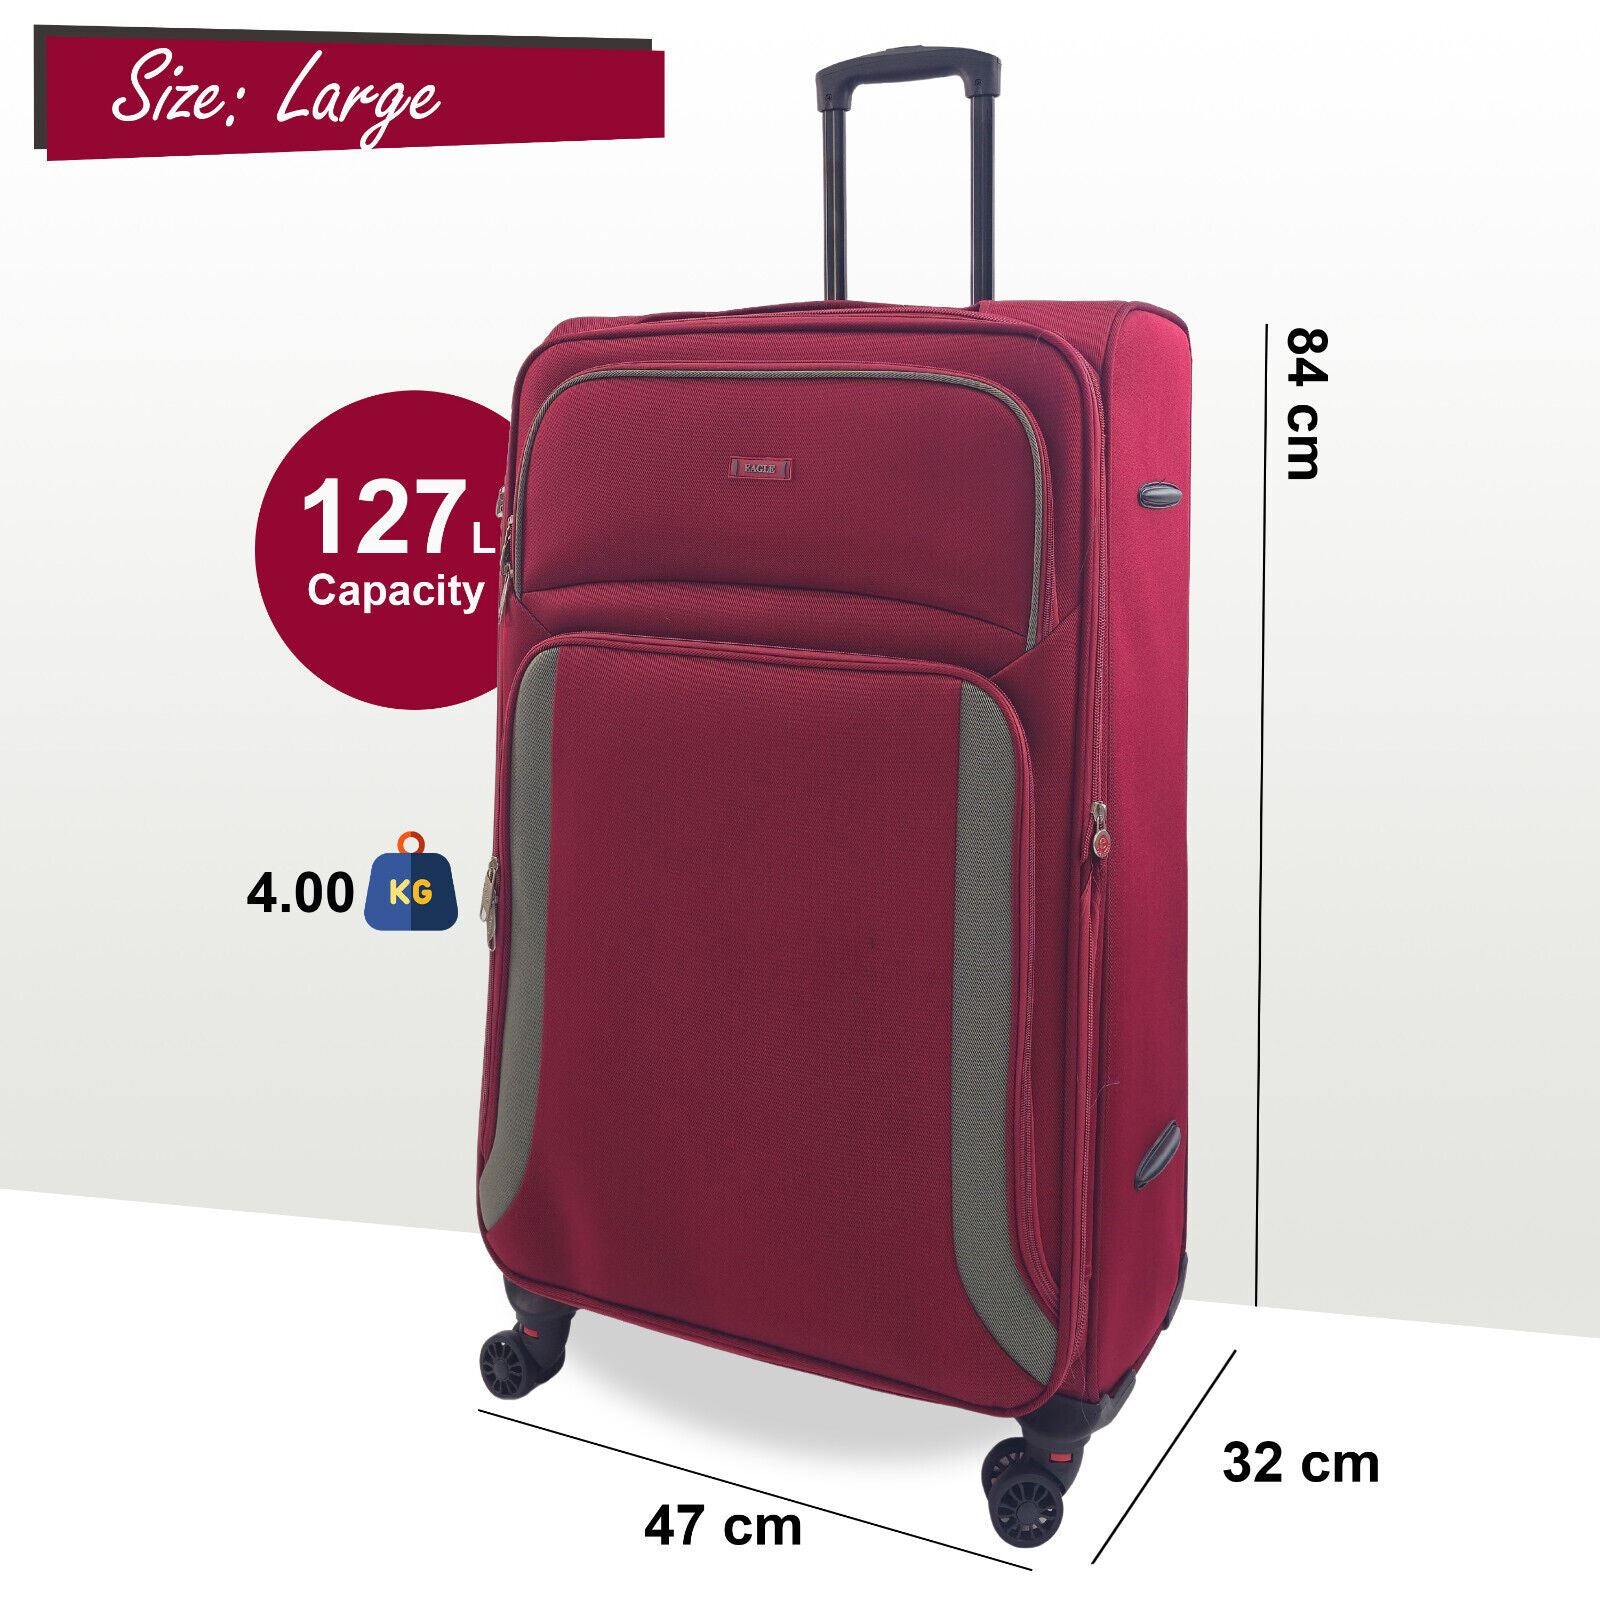 Ashland Large Soft Shell Suitcase in Burgundy